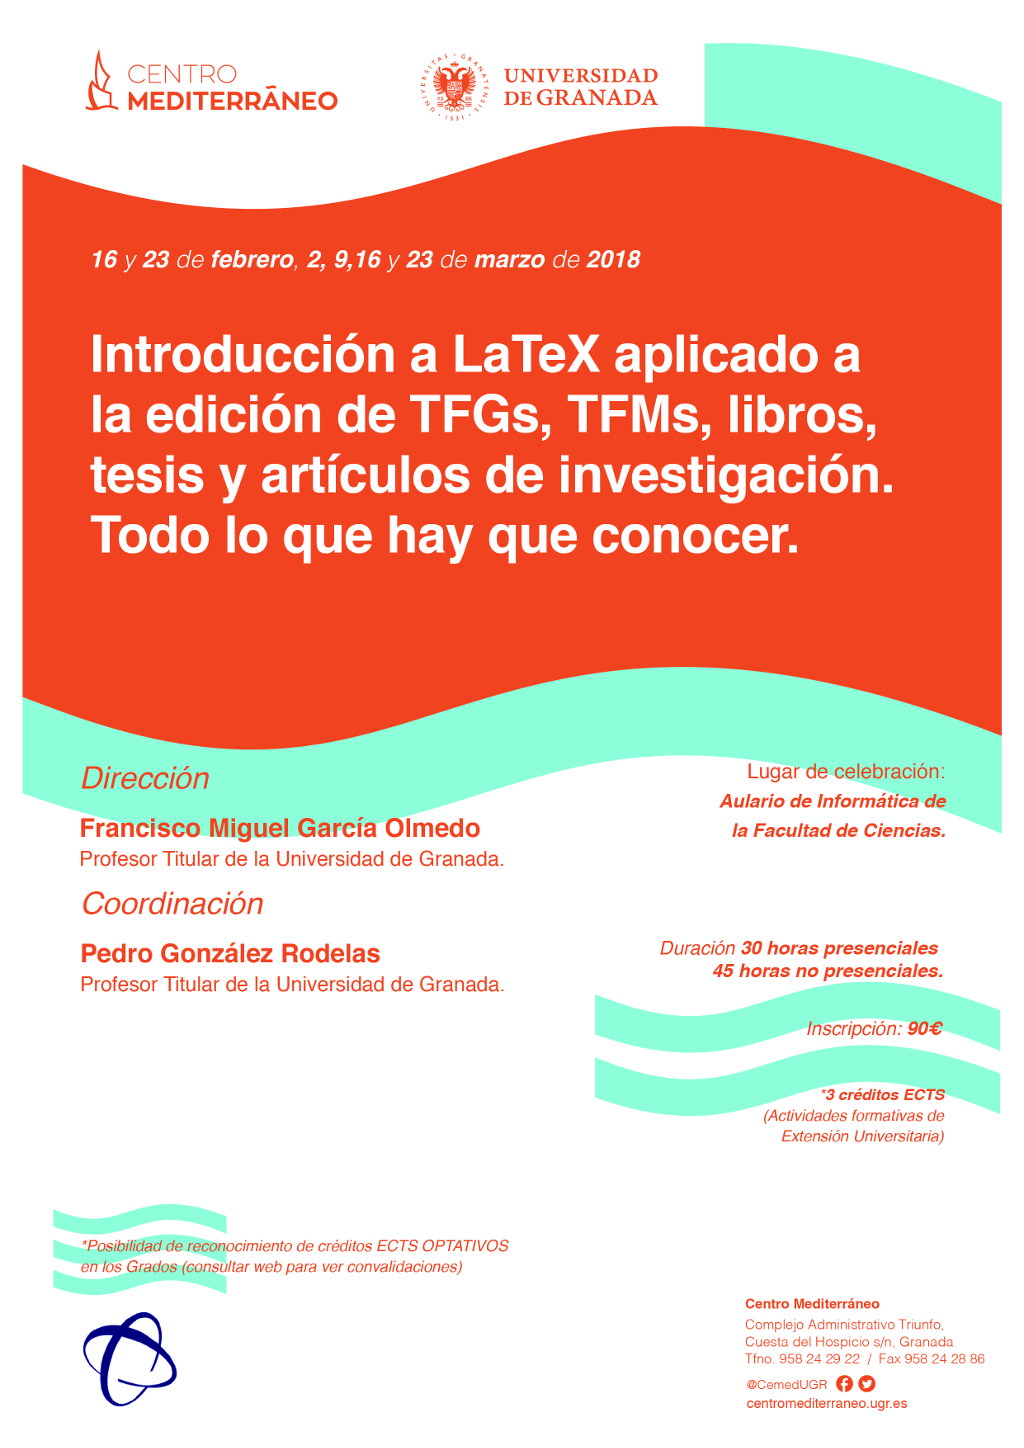 Introducción a LaTeX aplicado a la edición de TFGs. TFMs, libros, tesis y artículos de investigación. Todo lo que hay que conocer.